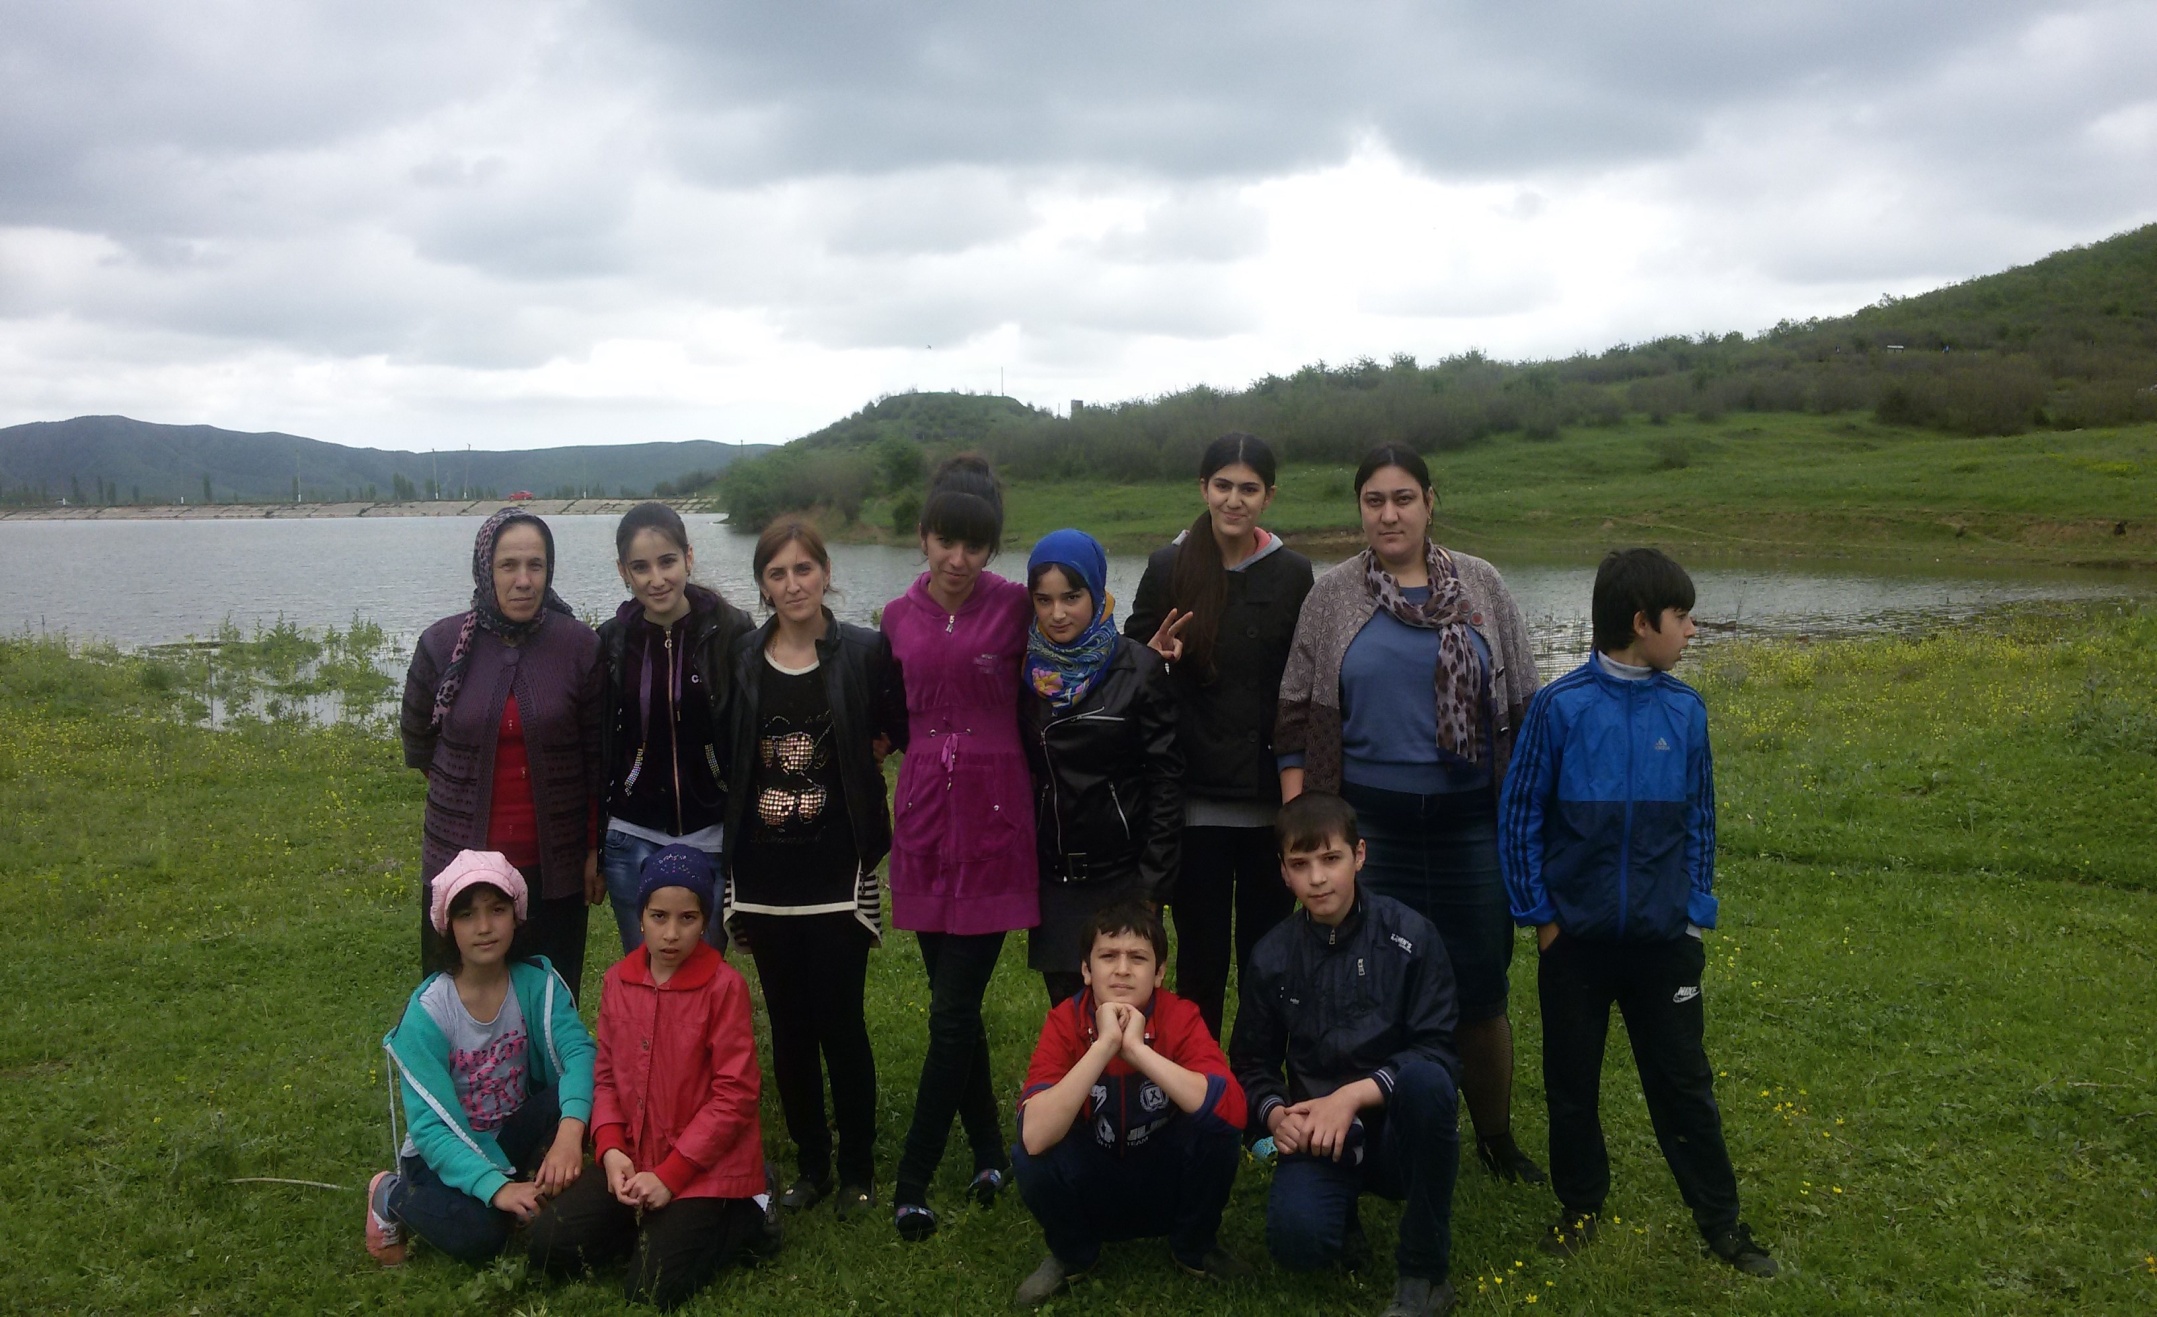 Конкурсная работа по истории Дагестана на темуМая малая родина